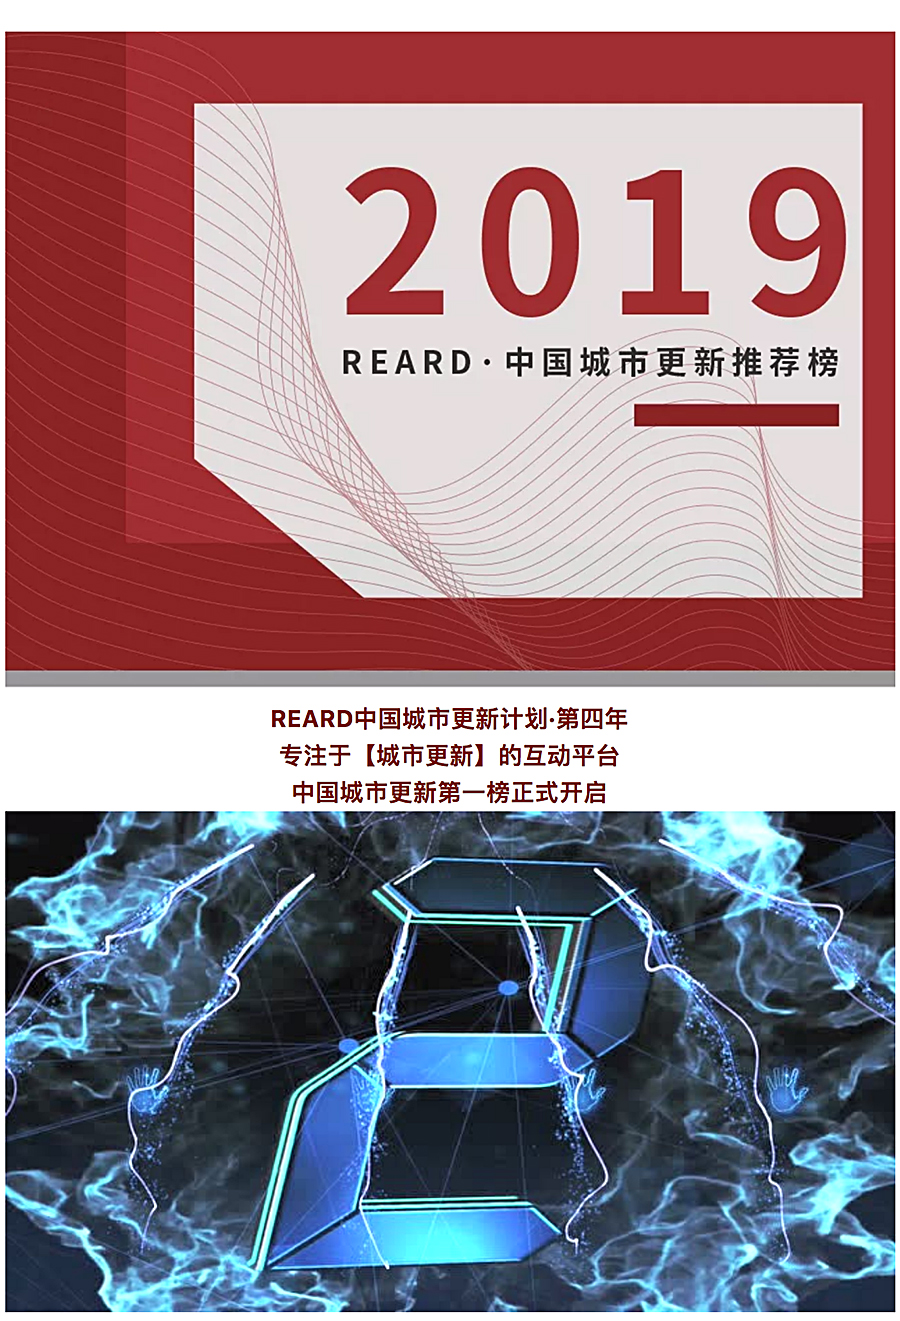 2019-REARD·中国城市更新推荐榜-_-REARD开启中国城市更新第一榜_0000_图层-1.jpg